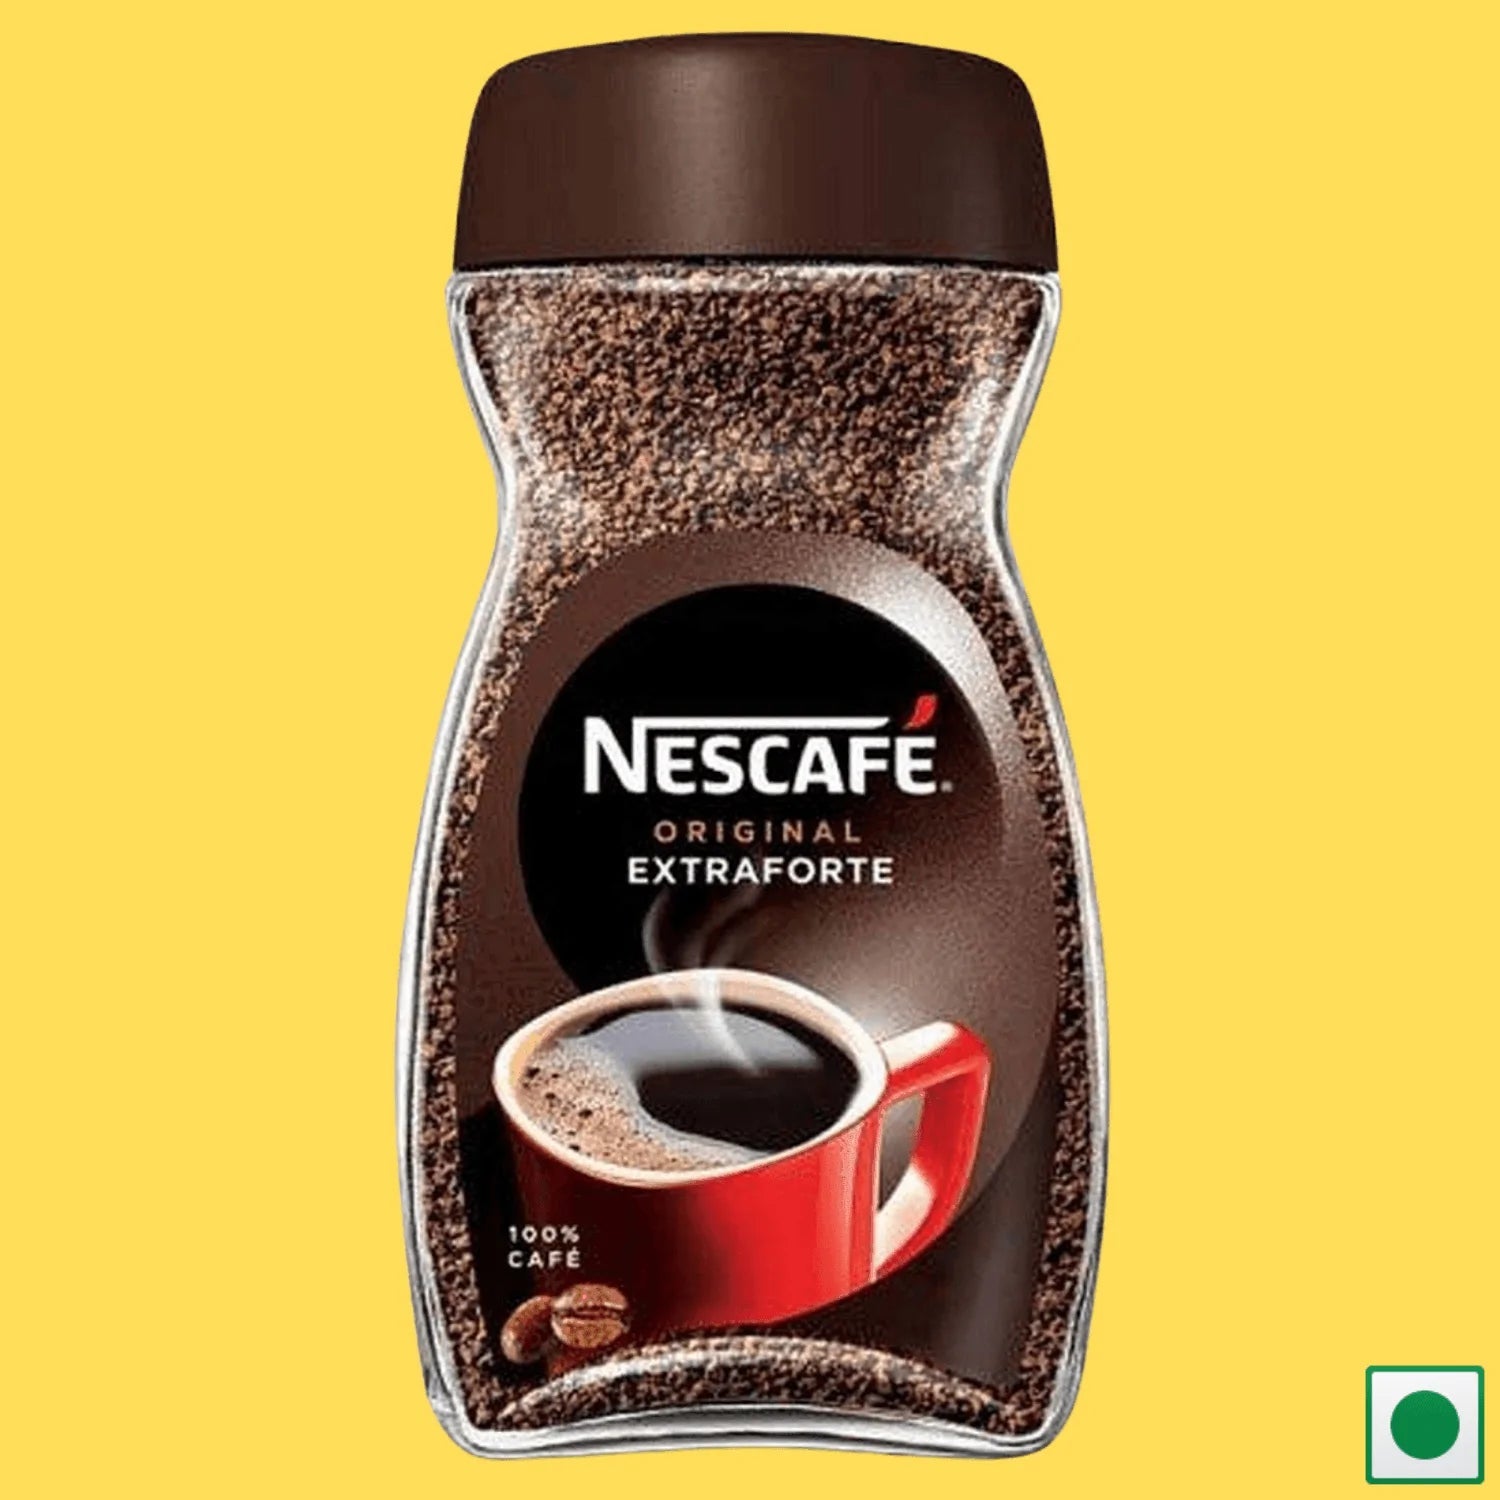 Nescafe Original Extraforte Coffee, 200g (Imported) - Super 7 Mart